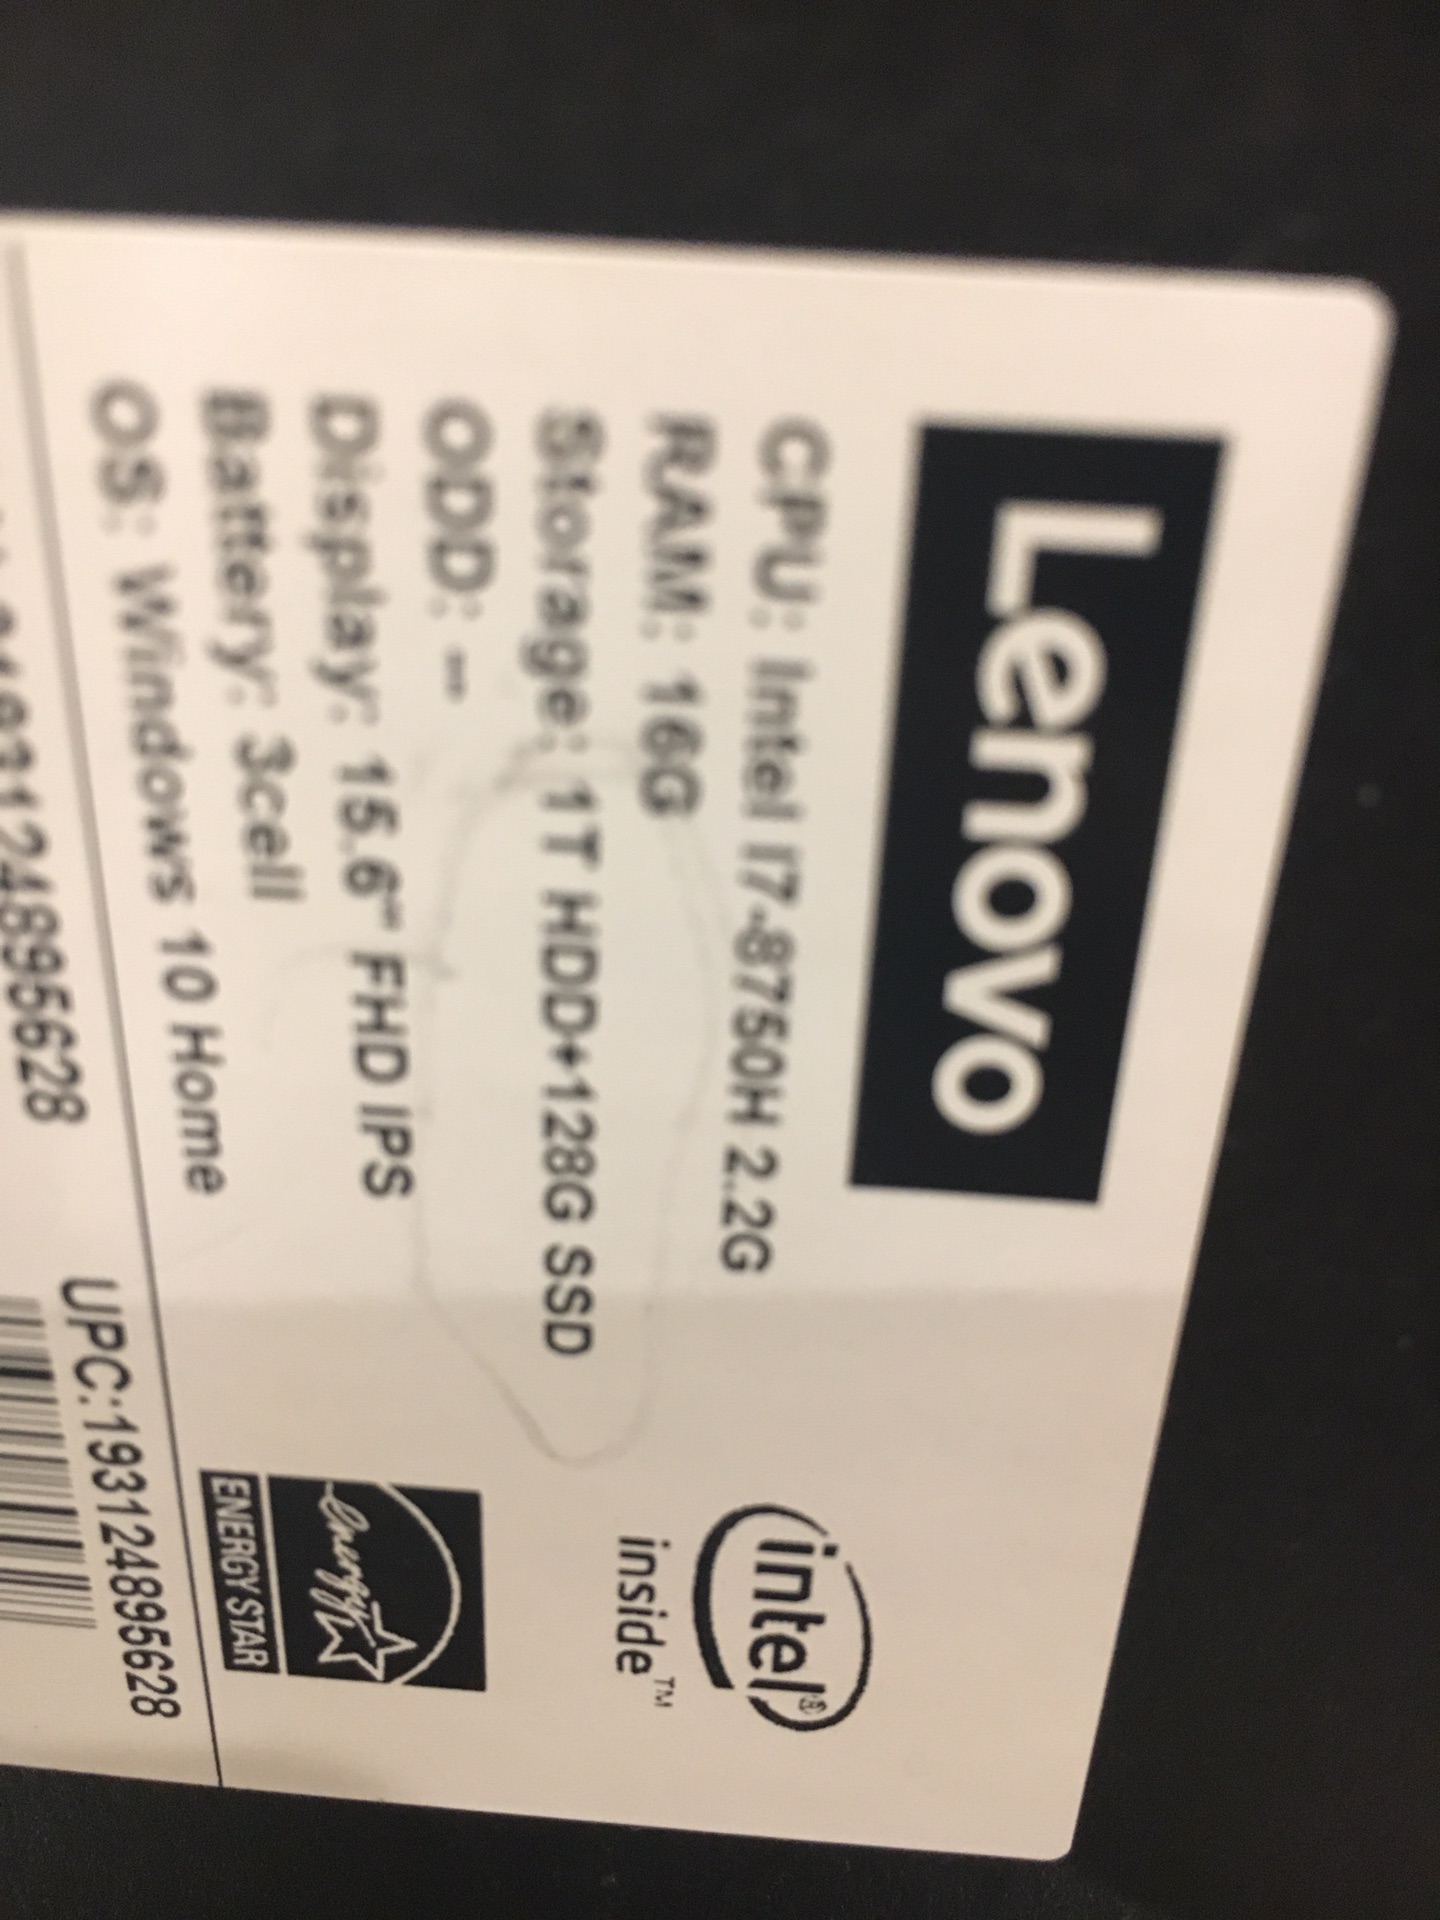 جهاز اللابتوب توشيبا لا تنسَ أنك شاهدت هذا الإعلان في عنكبوت أعرض لكم جهاز اللابتوب توش�-  Lenovo Lengion Y530...